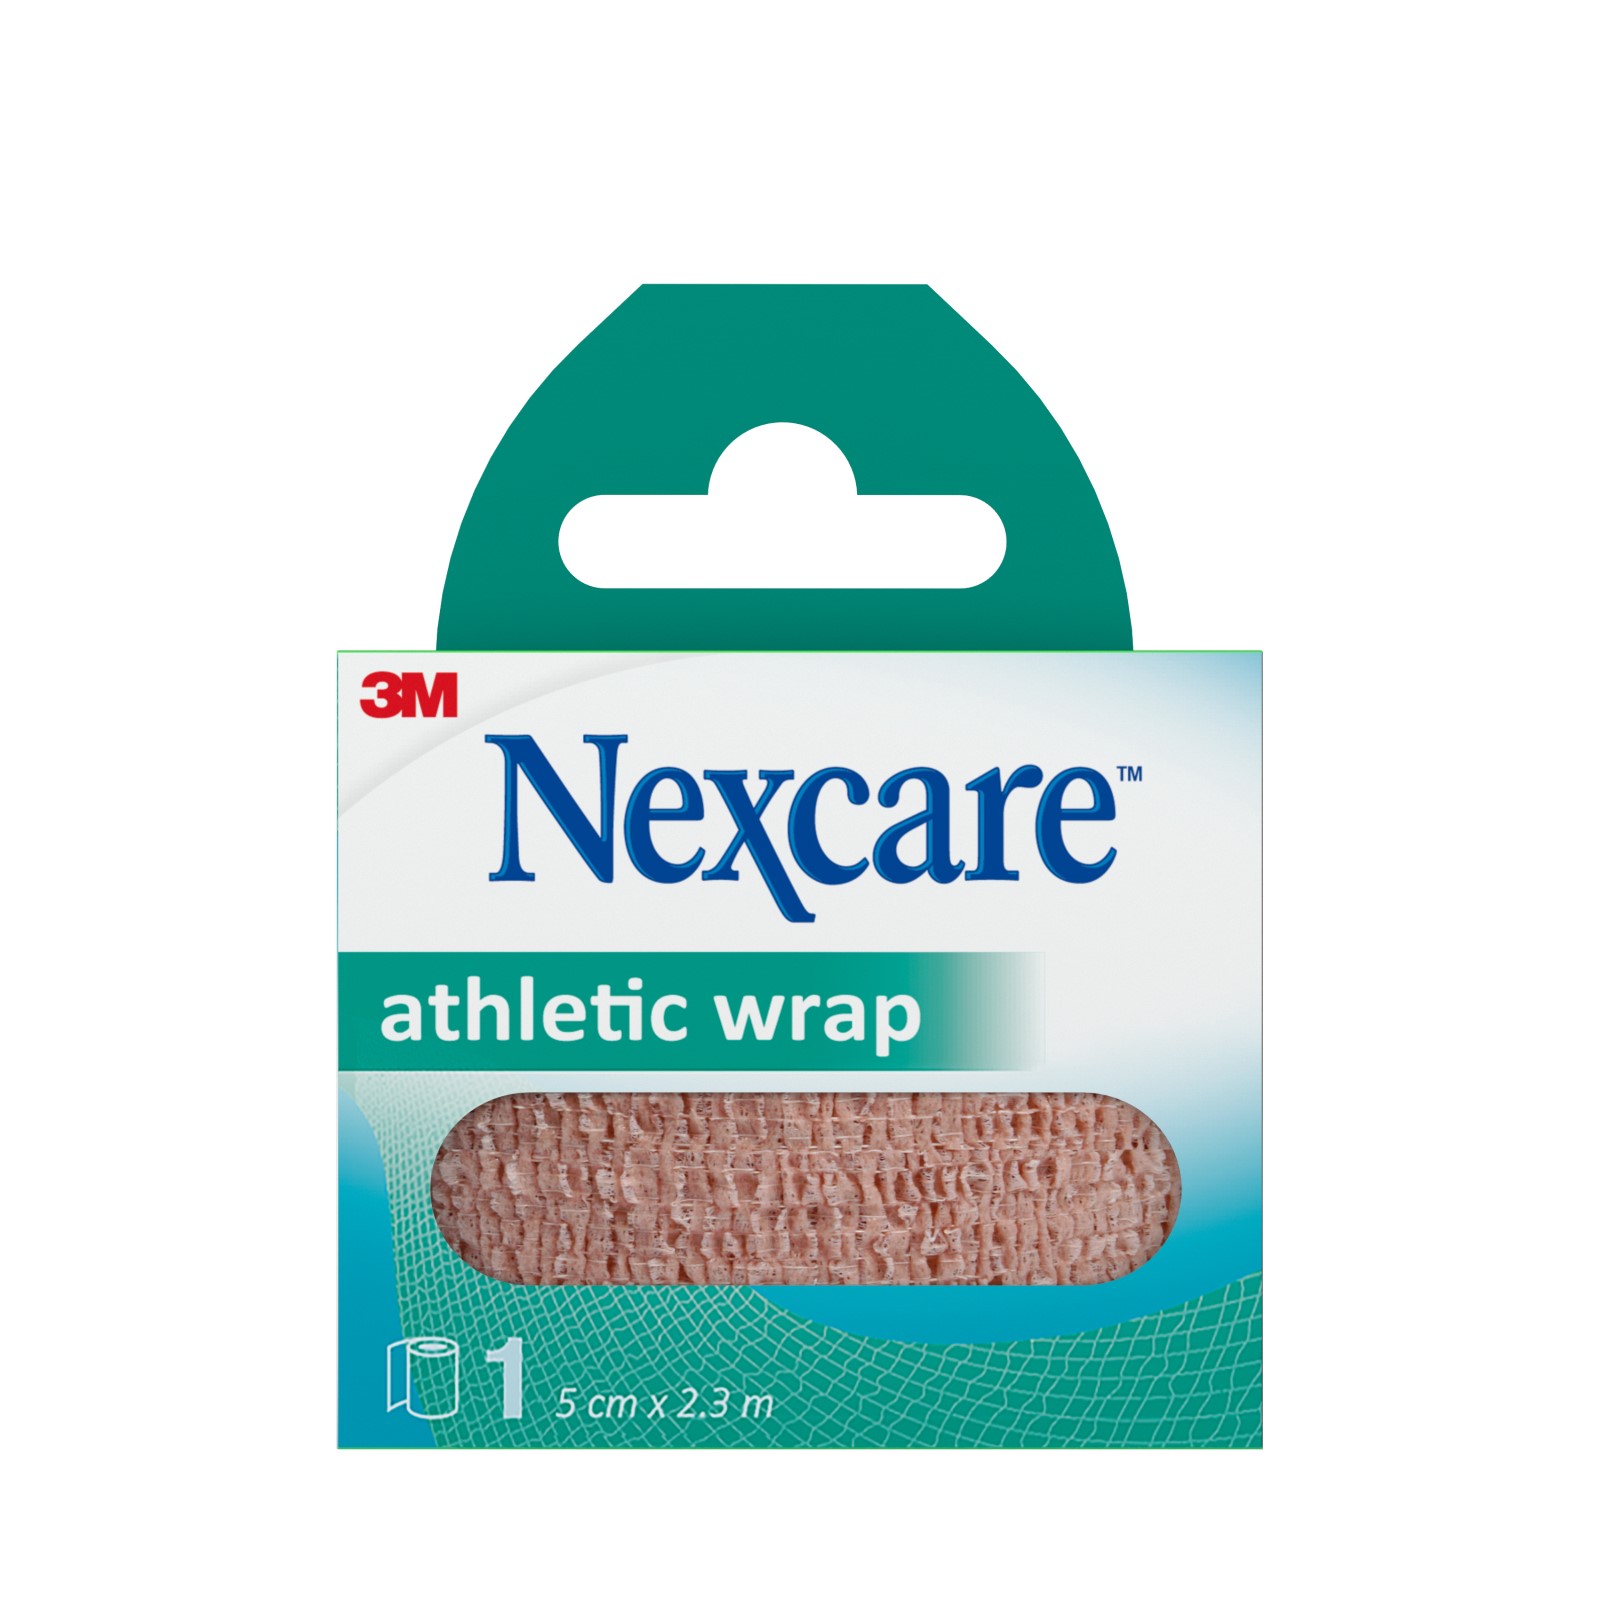 Nexcare™ Athletic Wrap hautfarben, 5 cm x 2,3 m, 1/Packung